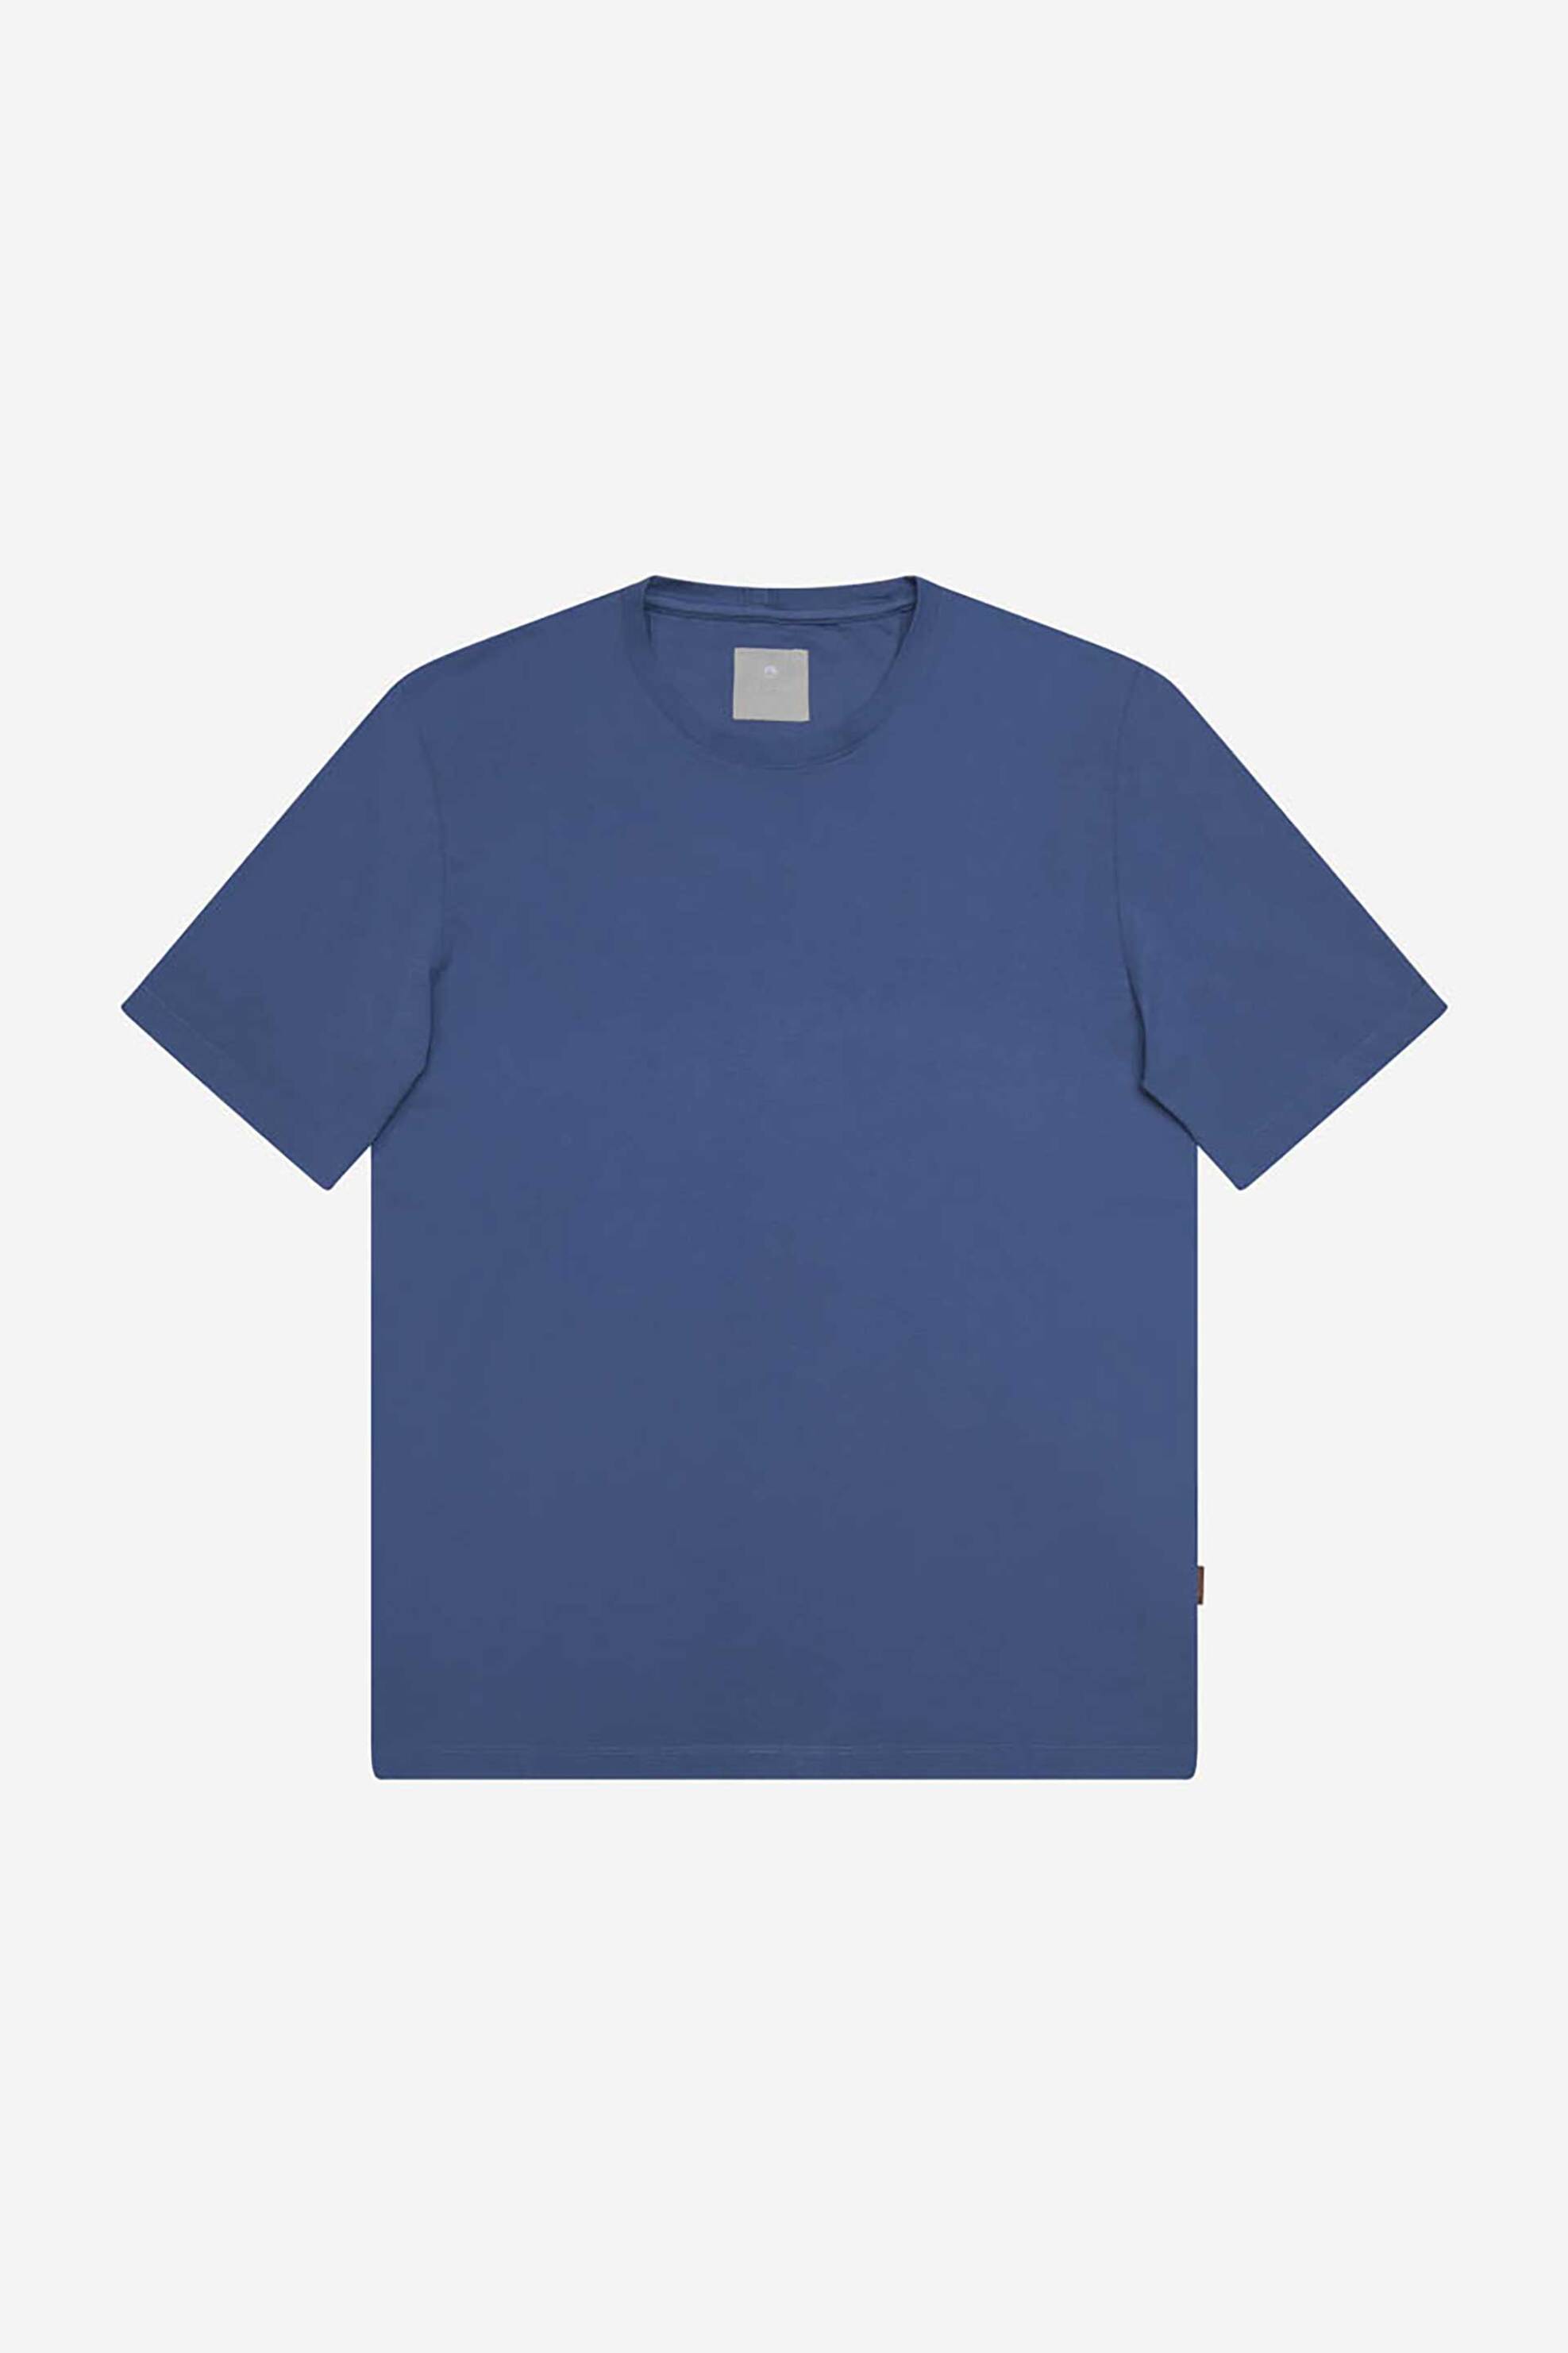 Ανδρική Μόδα > Ανδρικά Ρούχα > Ανδρικές Μπλούζες > Ανδρικά T-Shirts AT.P.CO ανδρικό T-shirt μονόχρωμο βαμβακερό με logo label στο πλάι - A286T2P02- Μπλε